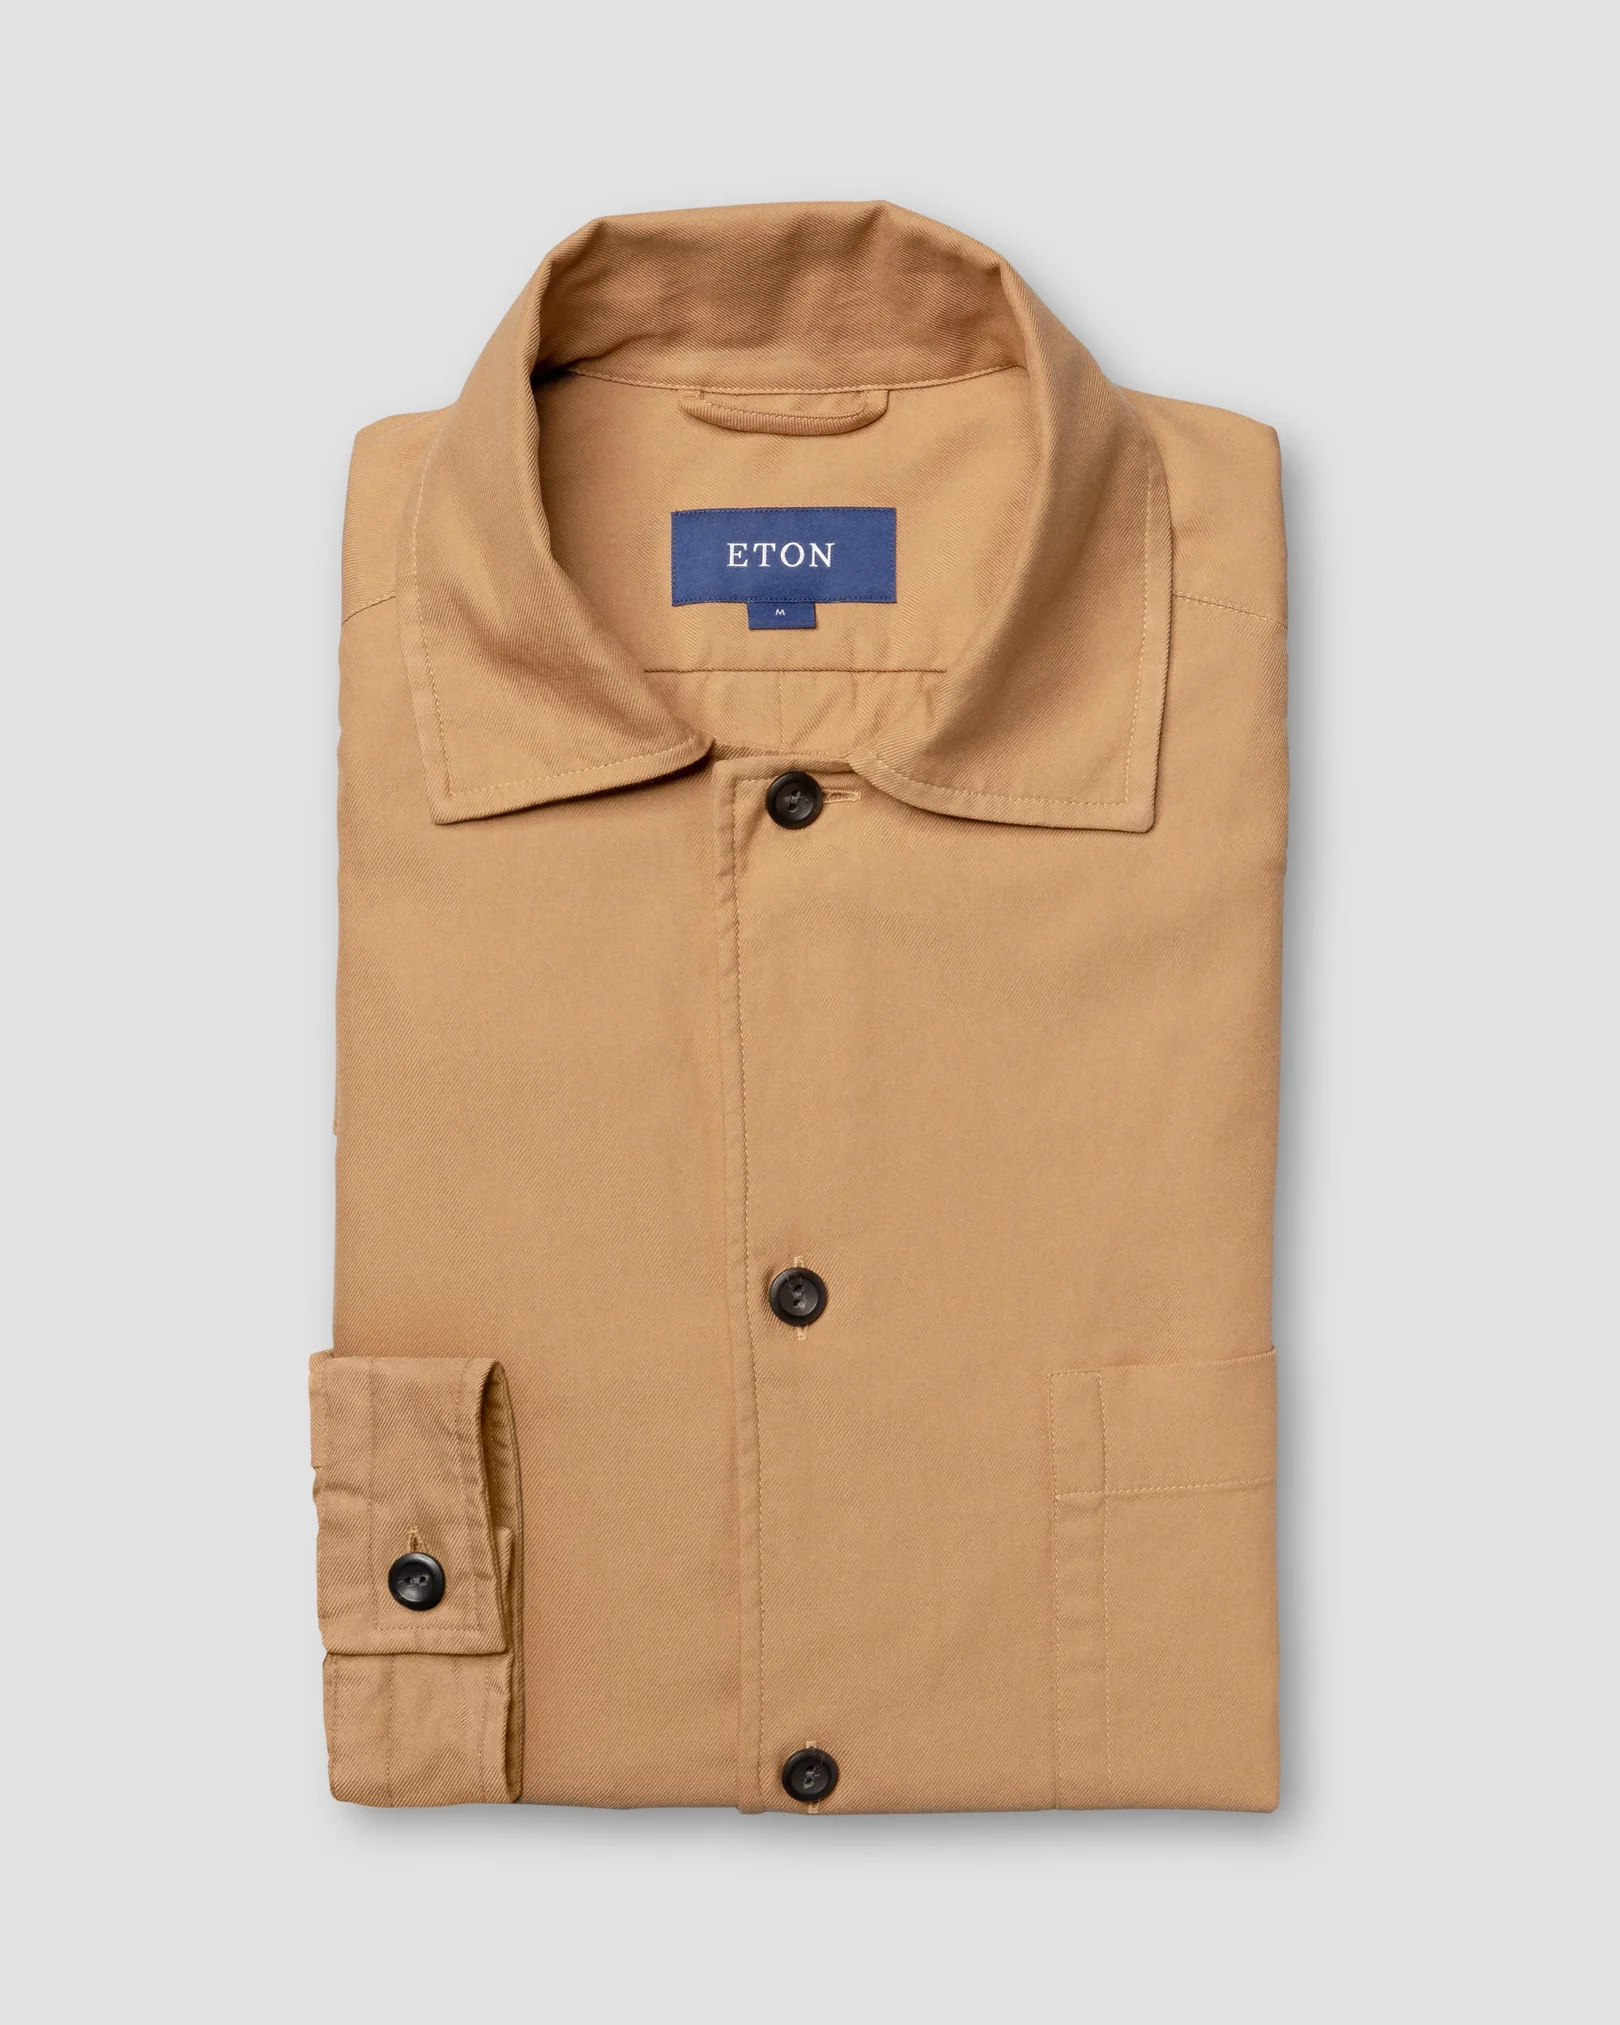 Eton - beige 3 pocket overshirt